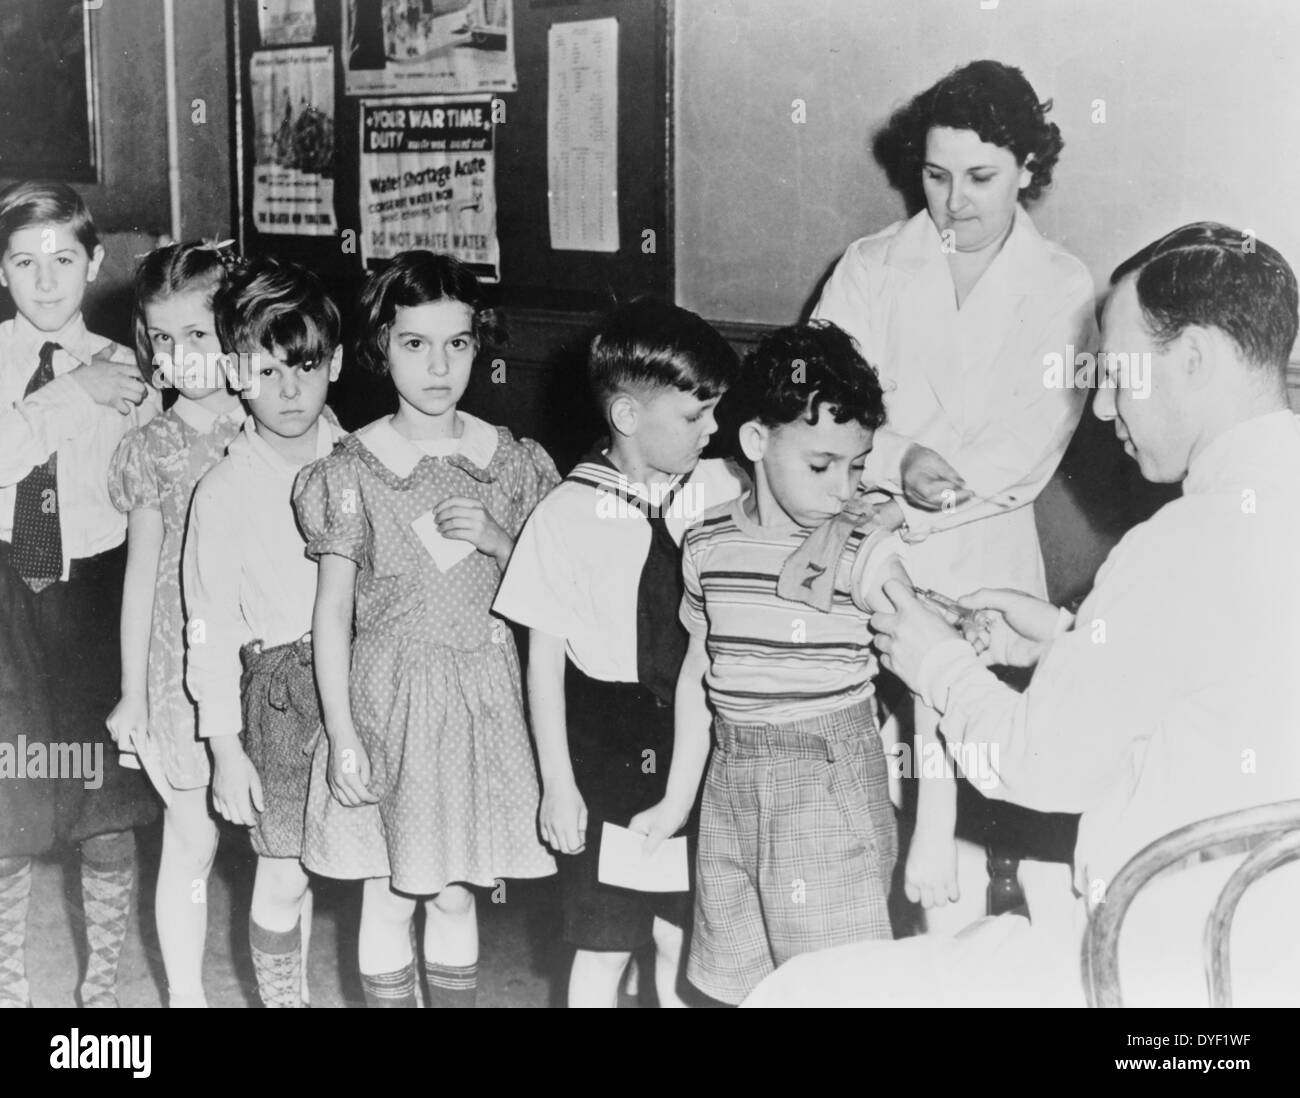 Gesundheit in einer US-Stadt ist ein Problem, da Kinder Impfungen und Immunisierung Schüsse an einem Kind Gesundheit Station in New York City, 1944 erwarten. Stockfoto